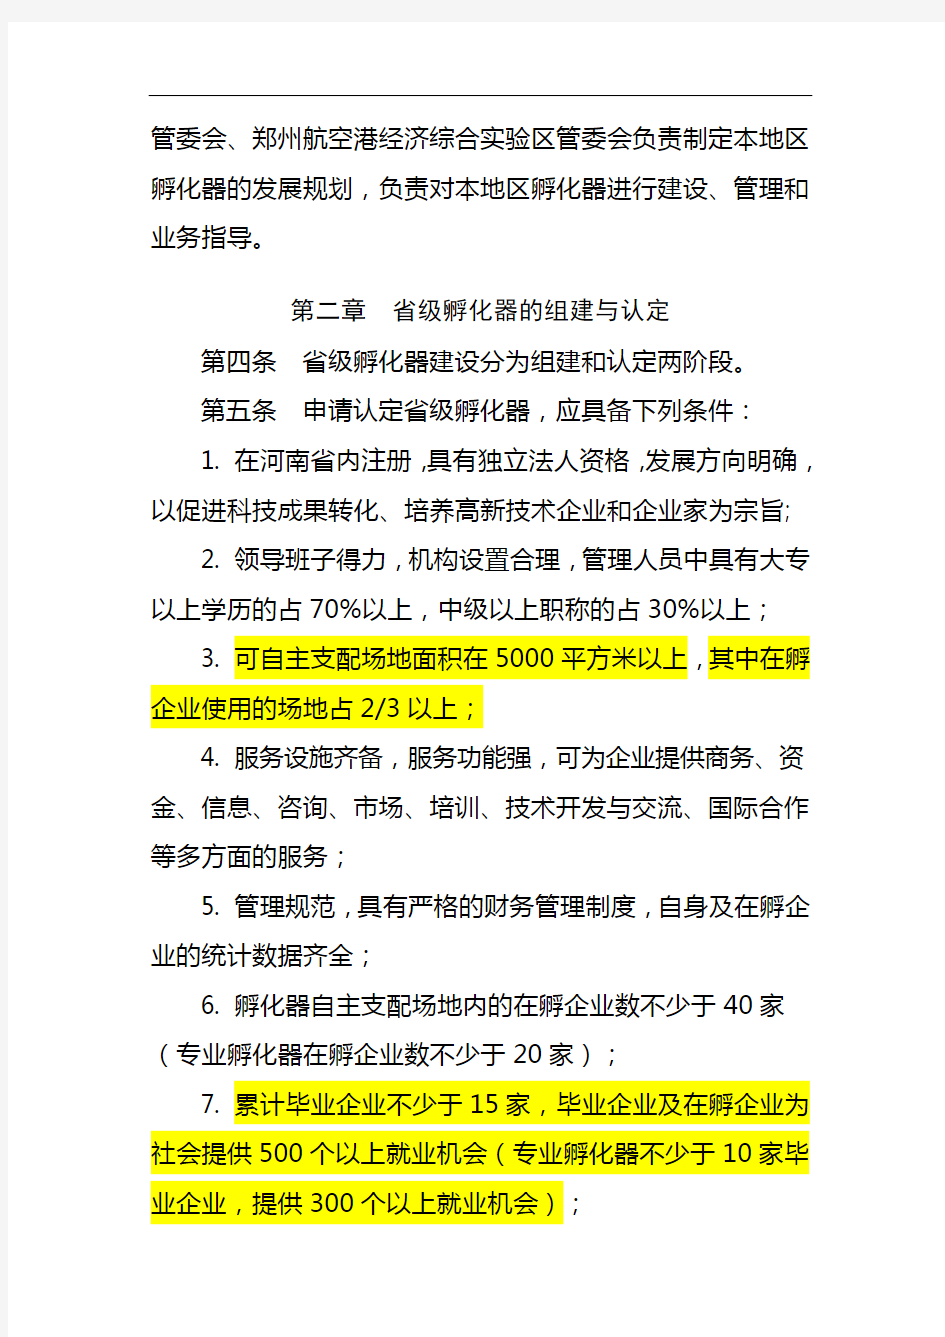 河南省省级科技企业孵化器管理办法